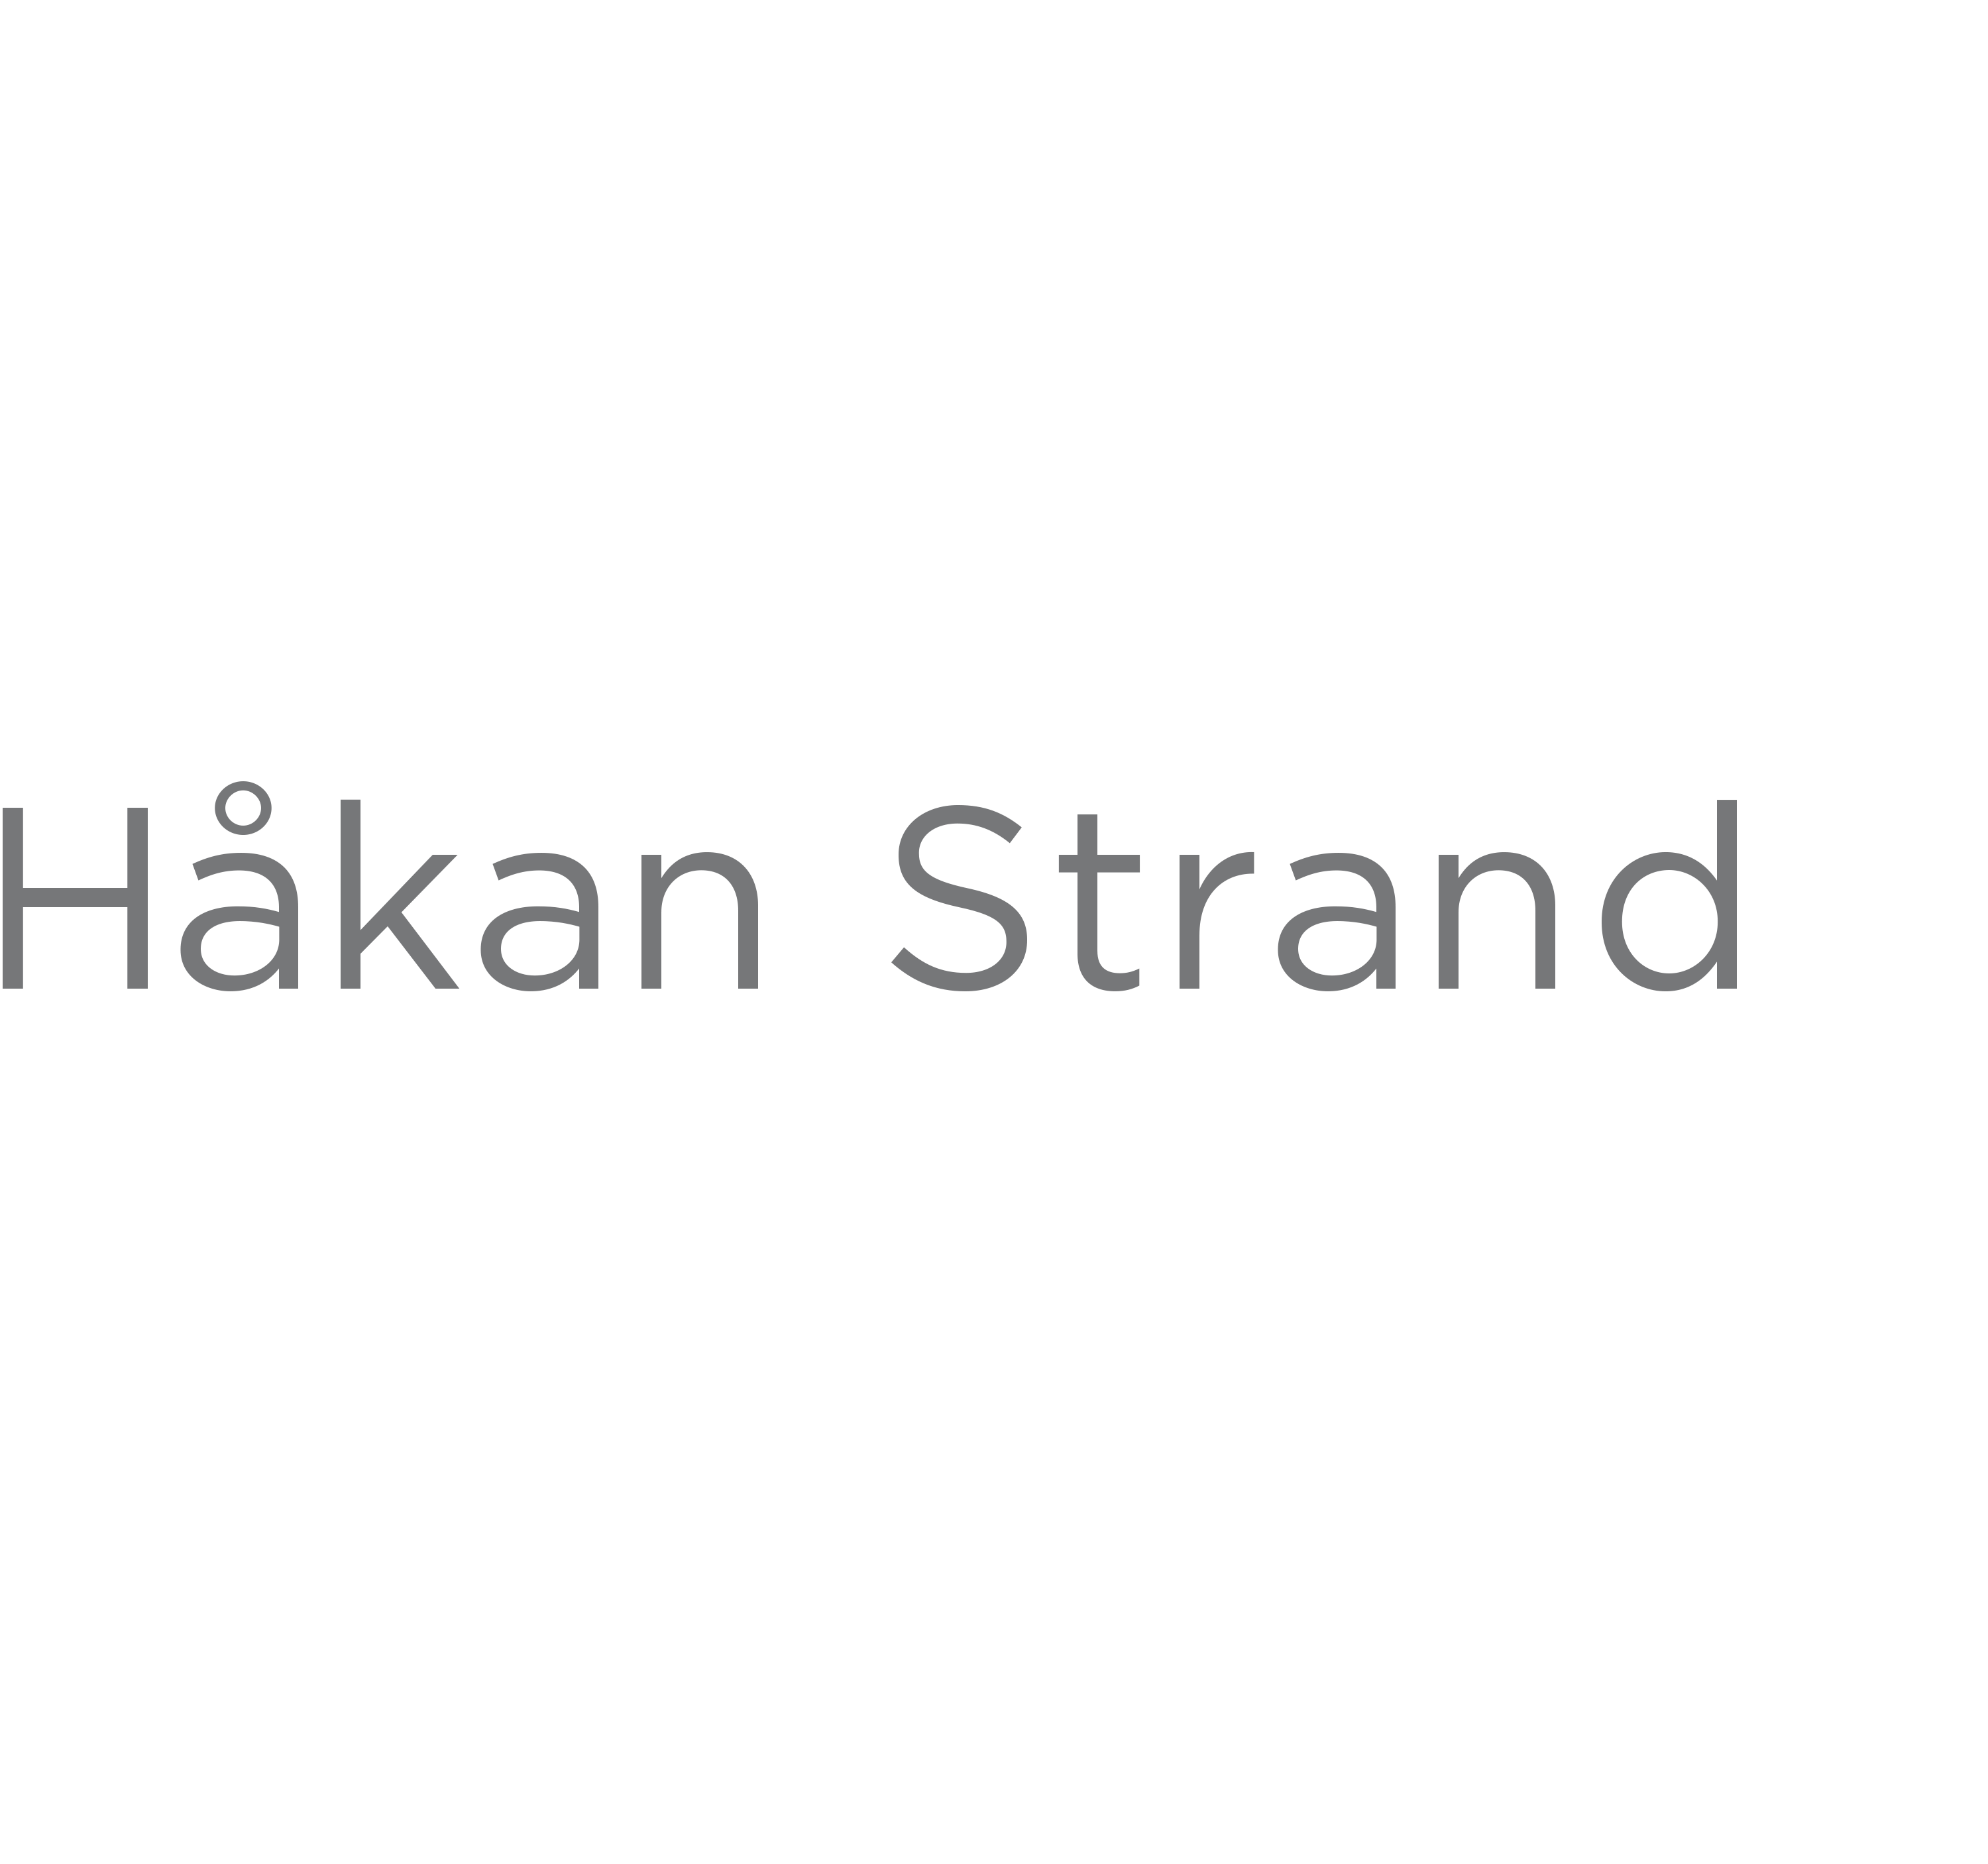 Håkan Strand Photographer